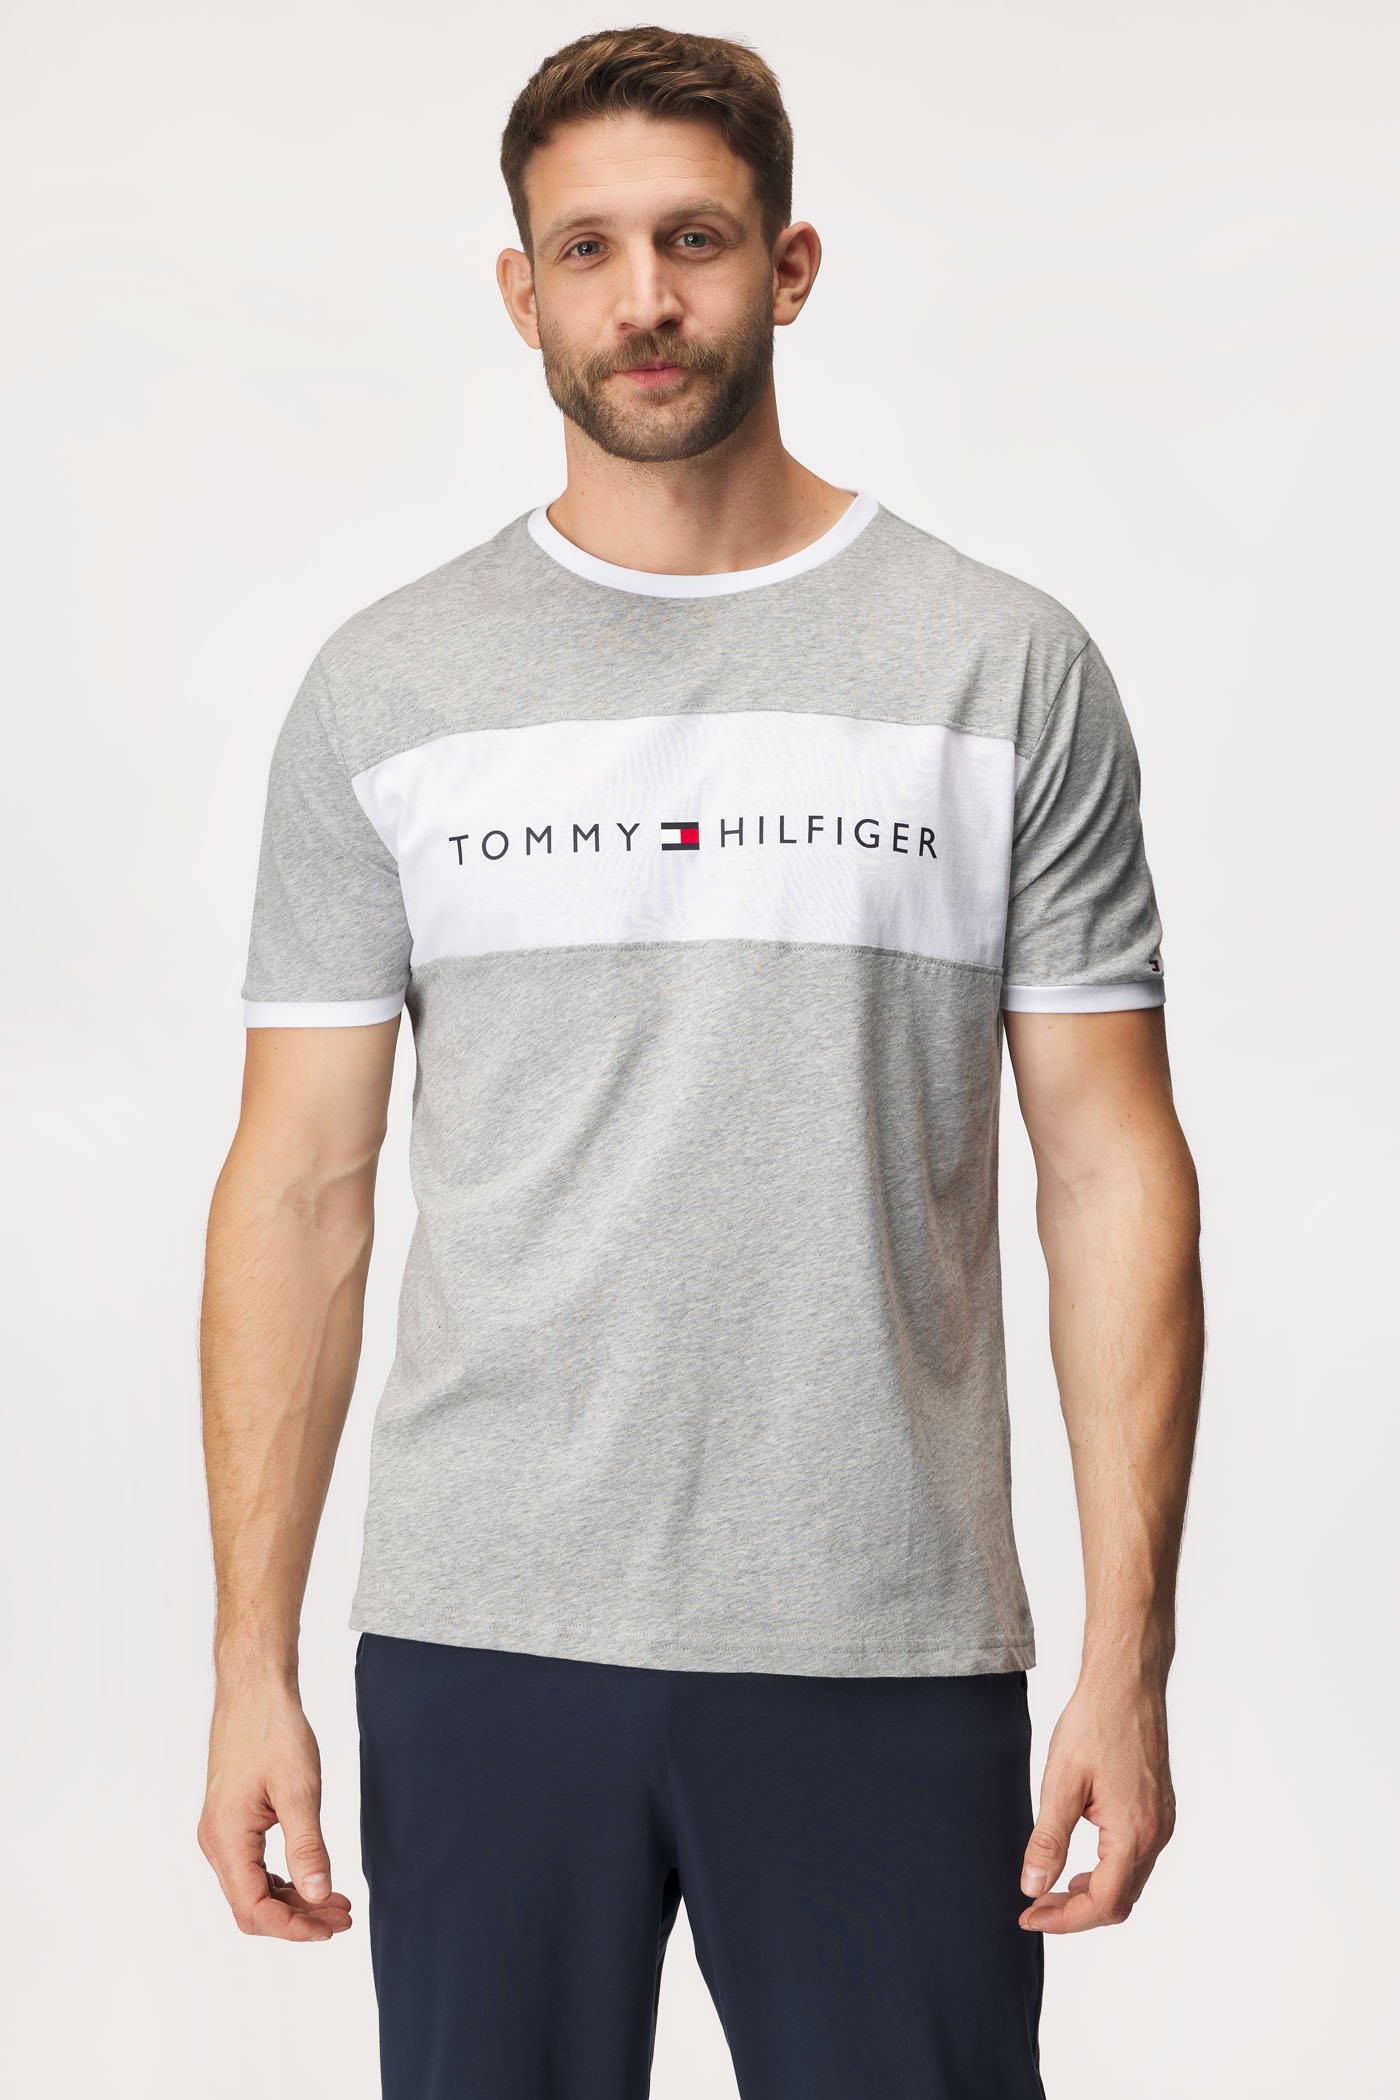 Тениска Tommy Hilfiger Original | Astratex.bg